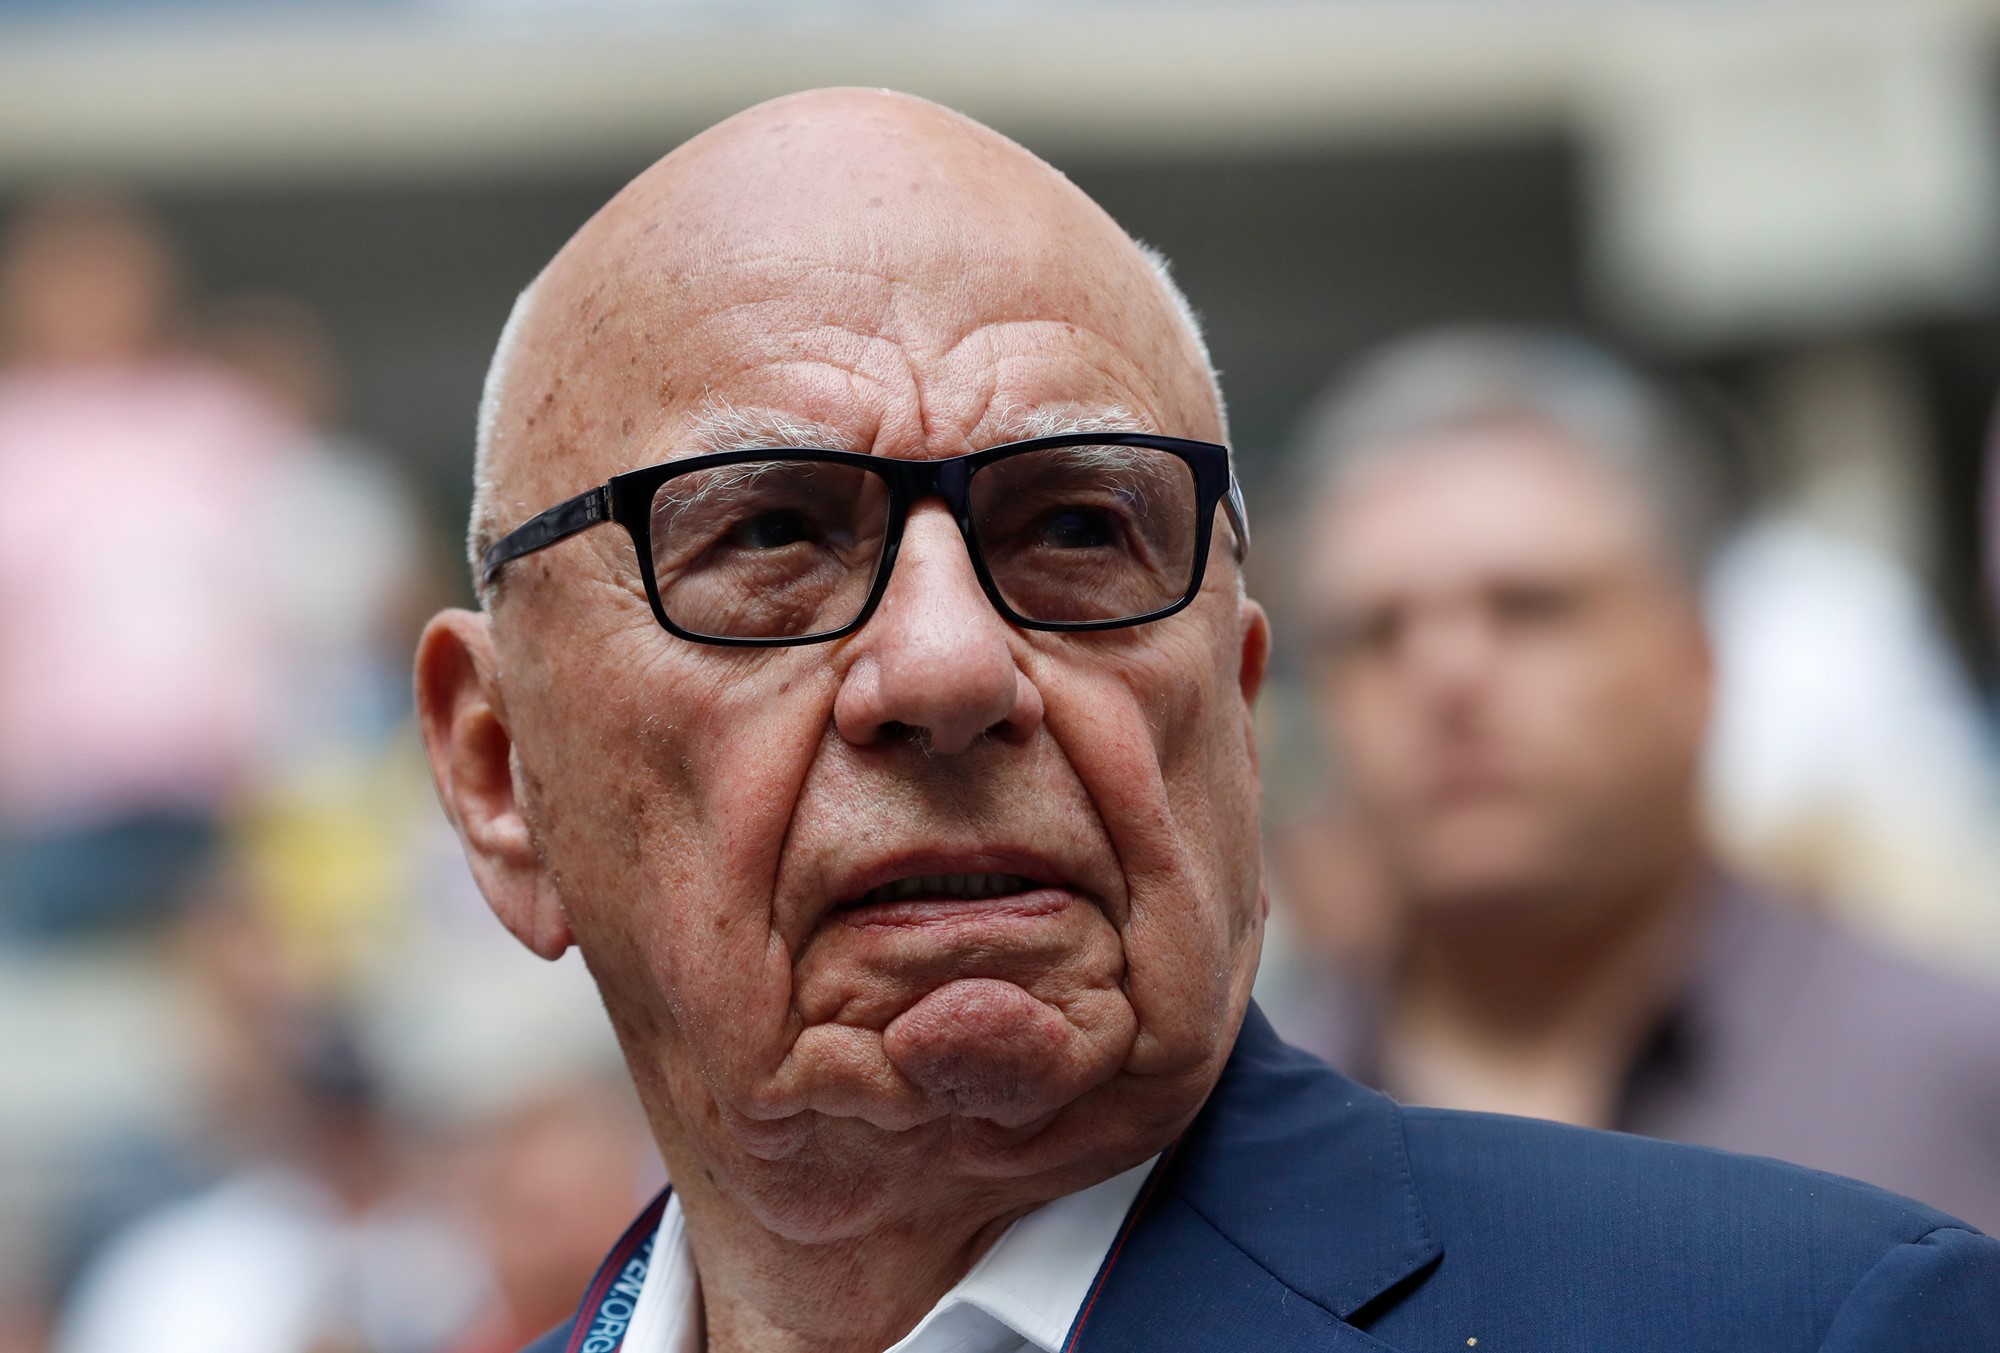 A close-up of Rupert Murdoch